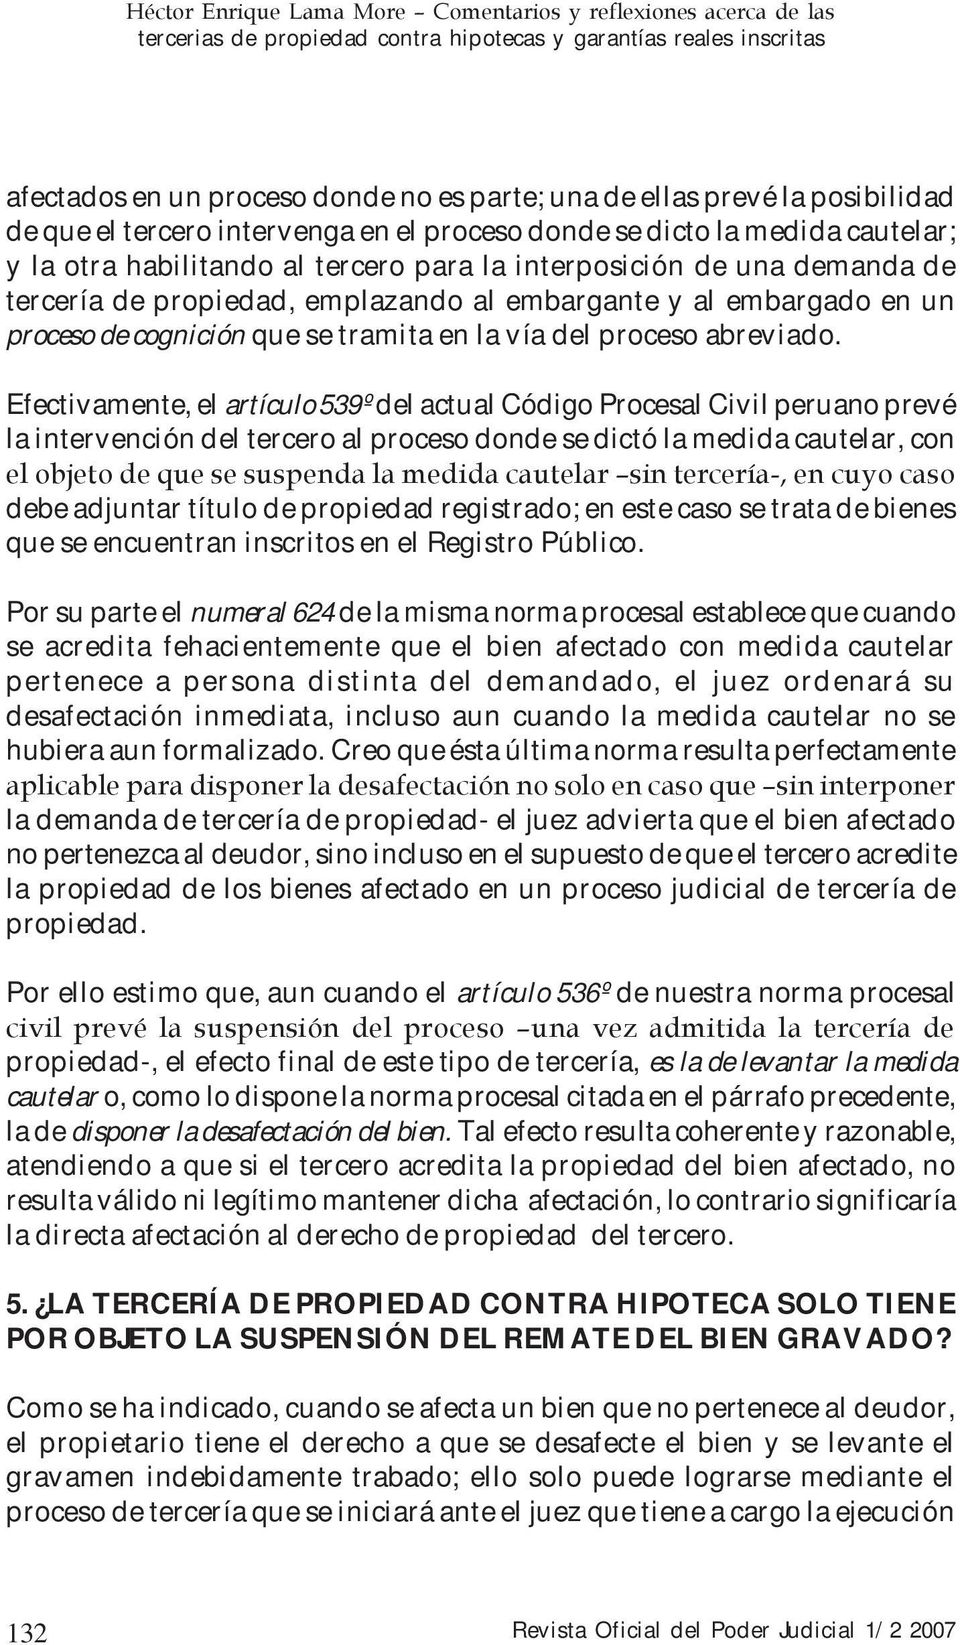 Efectivamente, el artículo 539º del actual Código Procesal Civil peruano prevé la intervención del tercero al proceso donde se dictó la medida cautelar, con el objeto de que se suspenda la medida